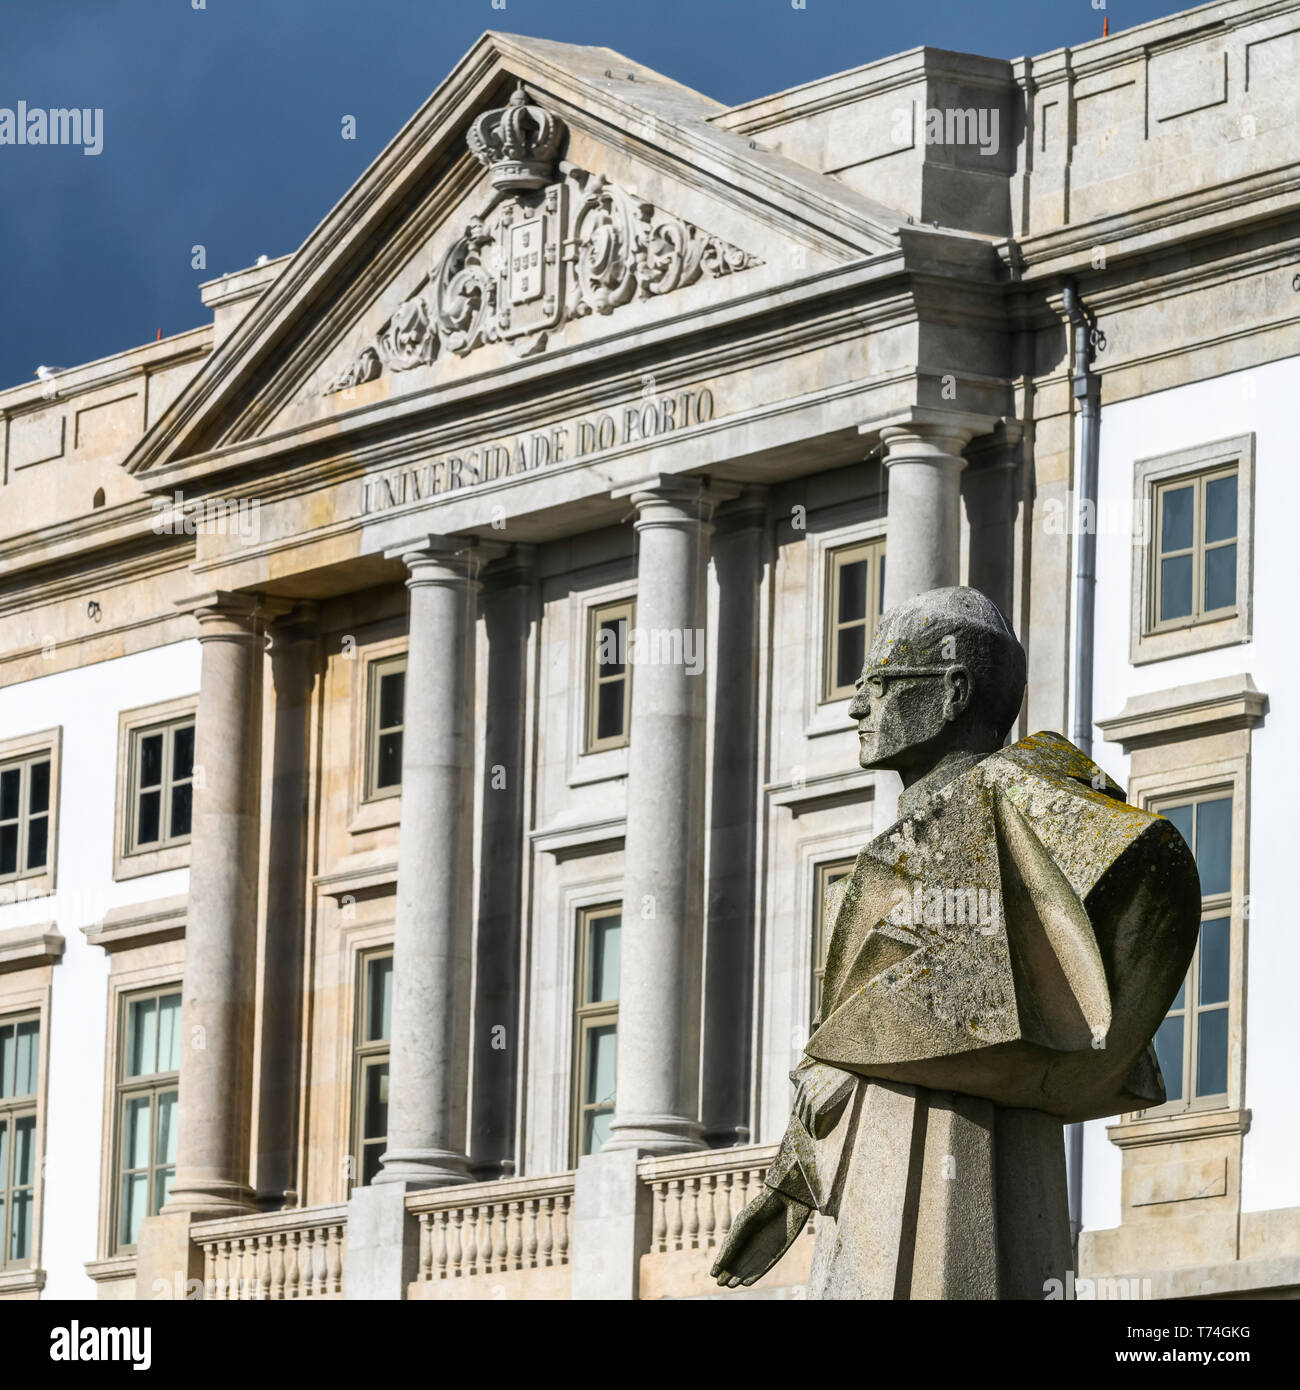 Edificio e statua presso l'Università di Porto; Porto, Portogallo Foto Stock